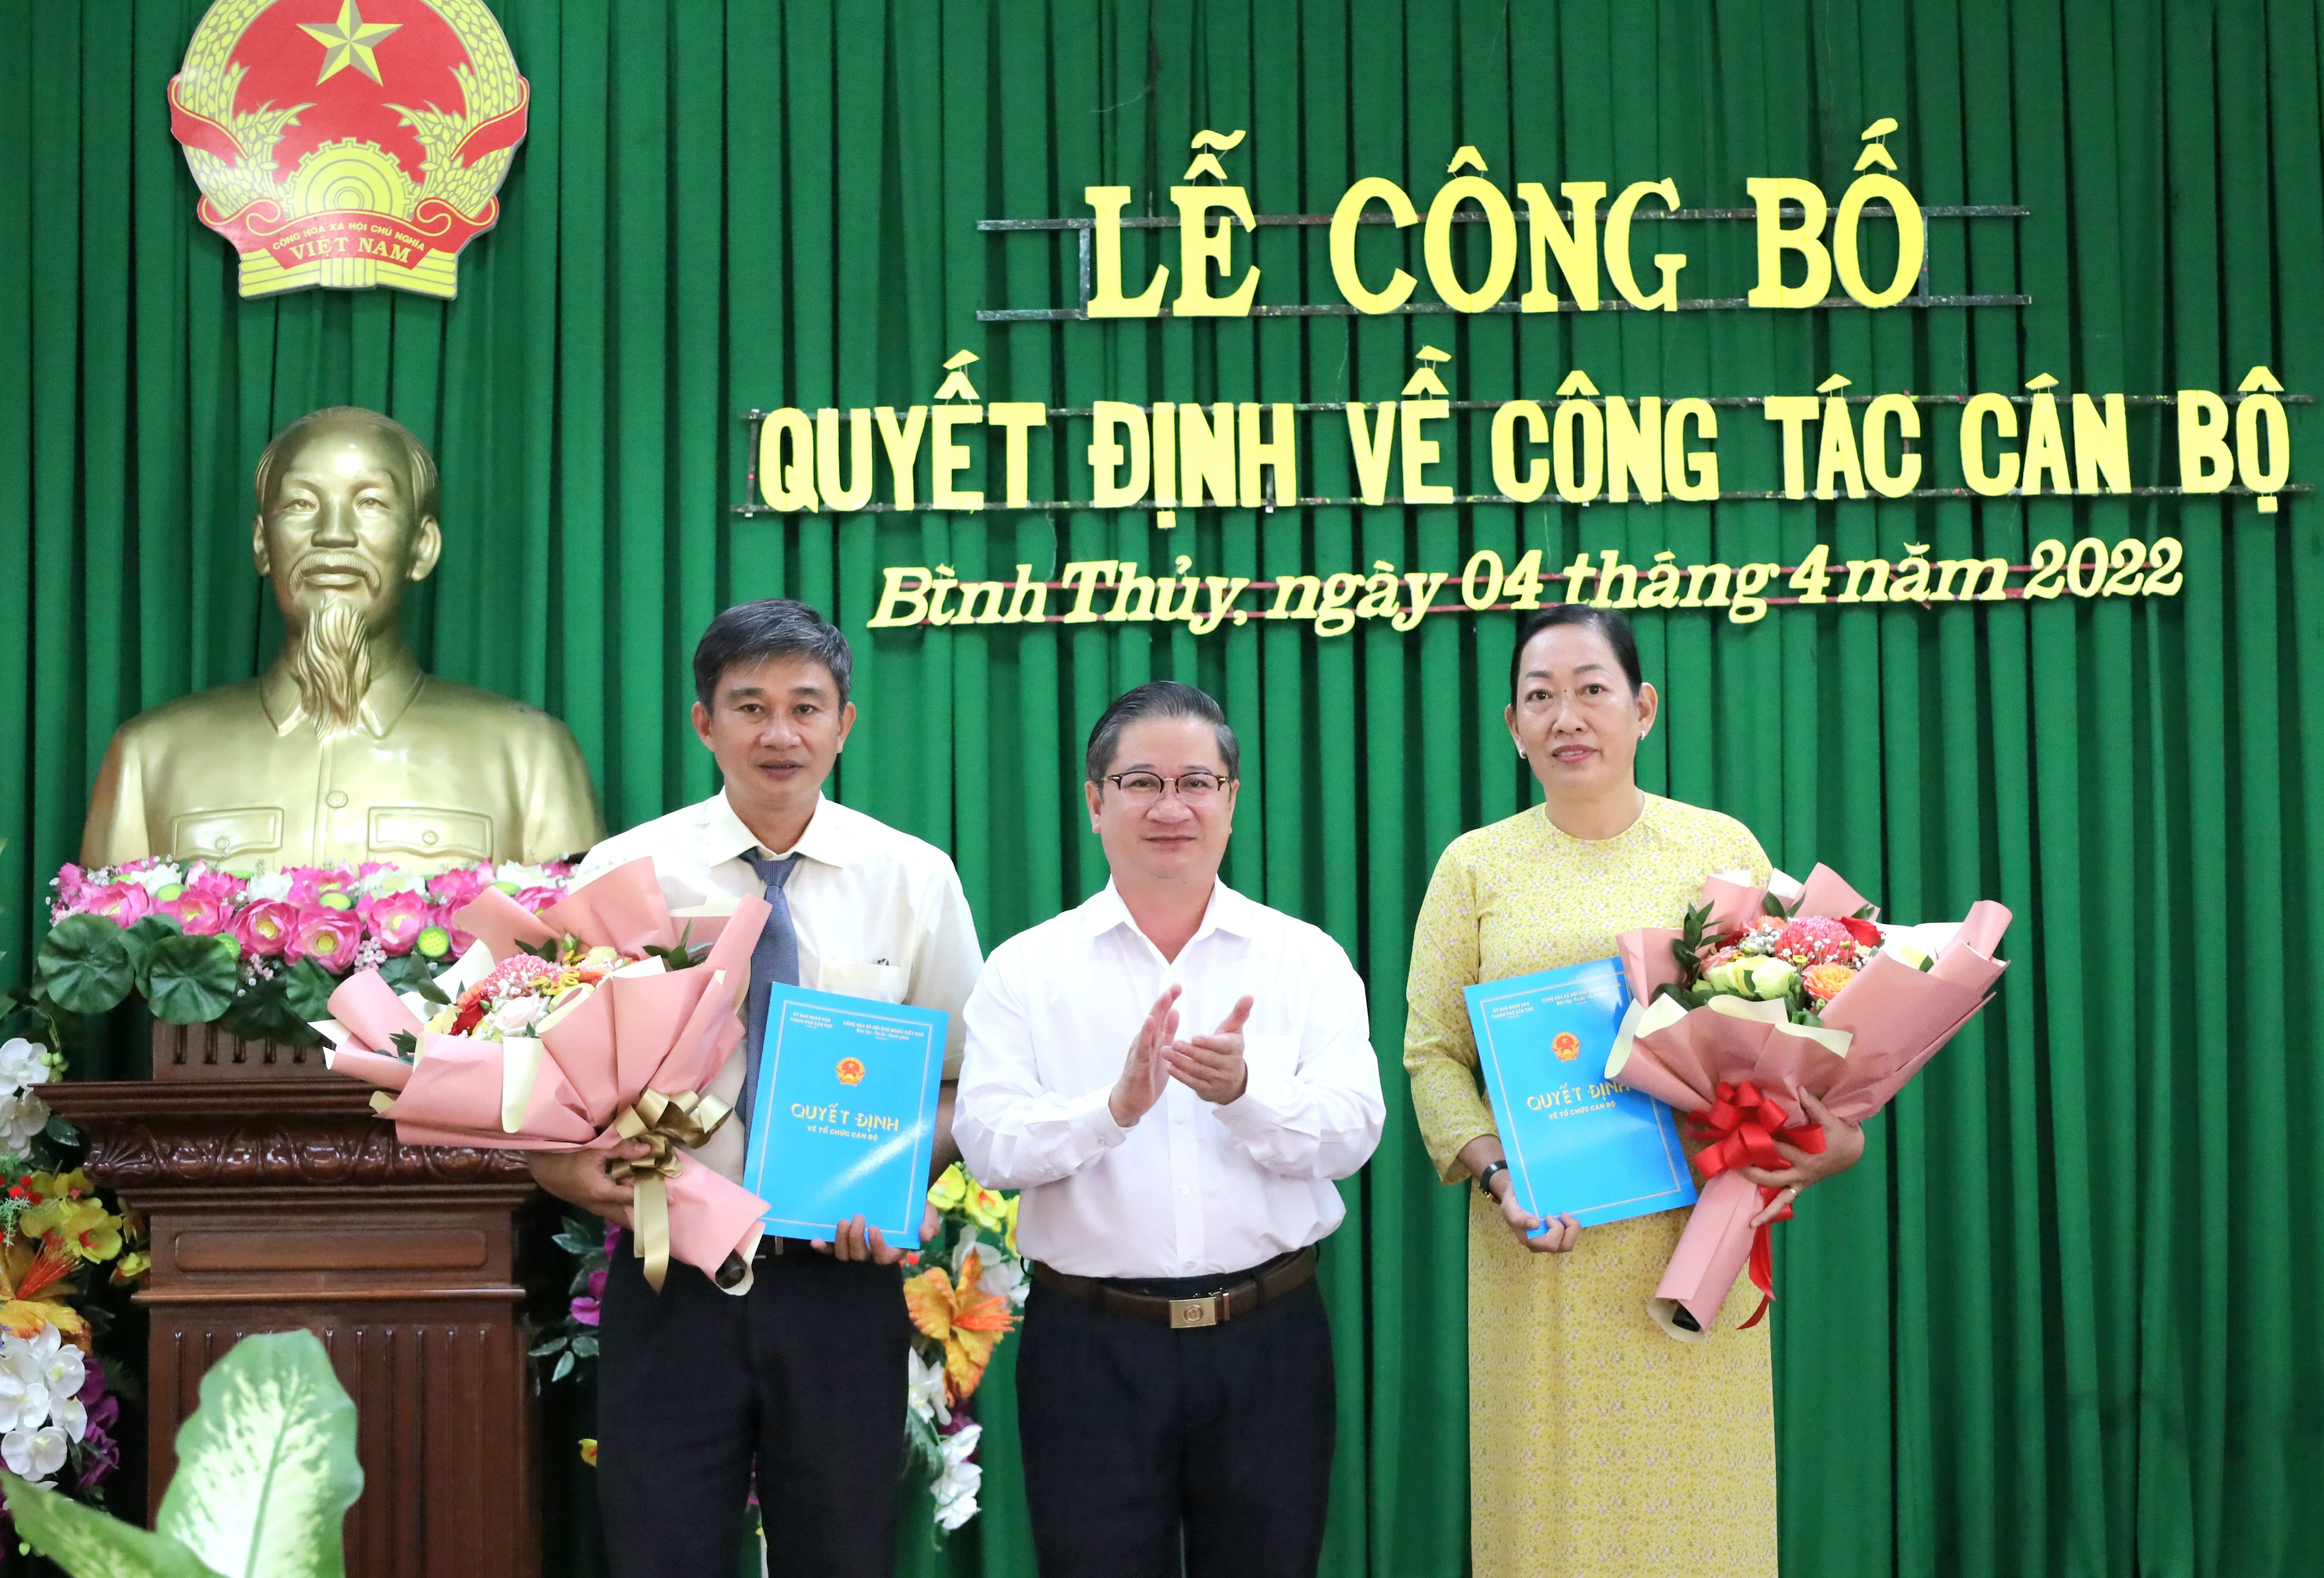 Ông Trần Việt Trường – Phó Bí thư Thành ủy, Chủ tịch UBND TP. Cần Thơ trao quyết định, hoa chúc mừng cho bà Phan Thị Nguyệt và ông Lê Phước Lợi.